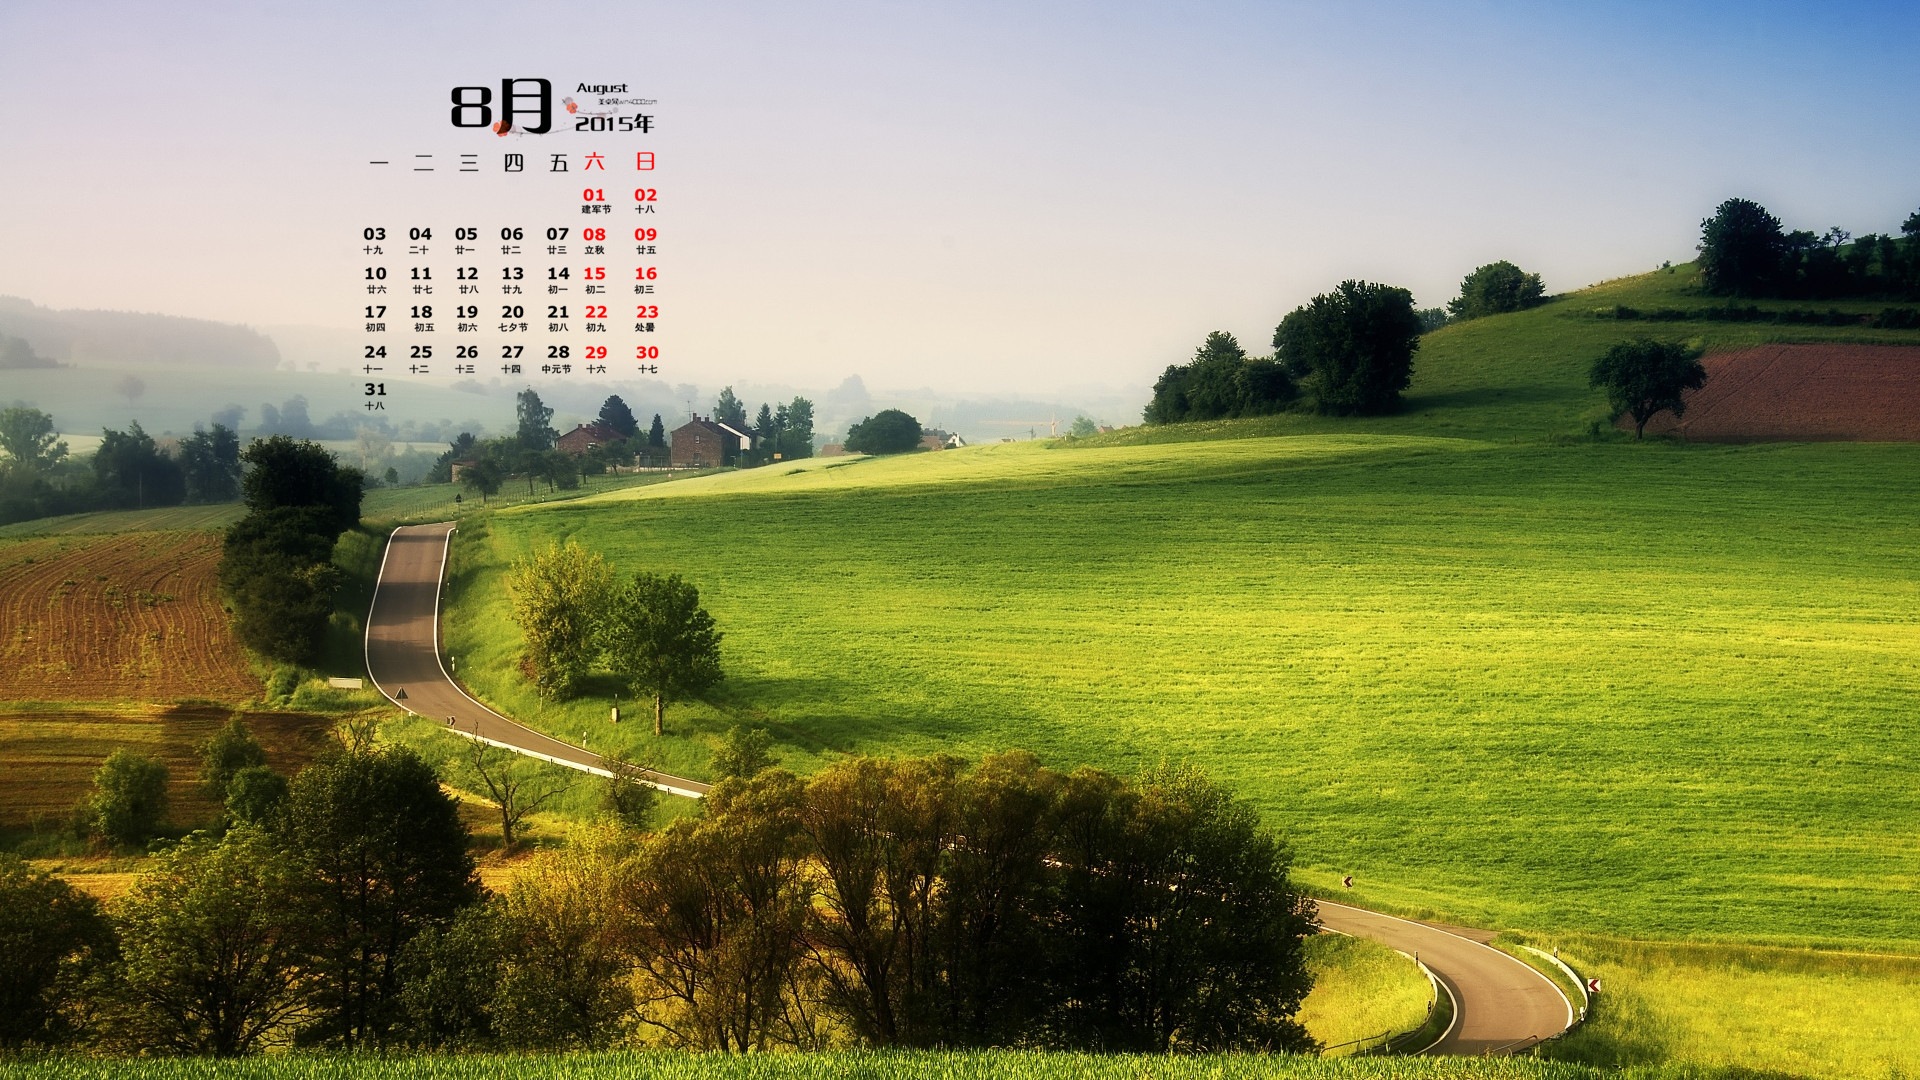 08. 2015 kalendář tapety (1) #1 - 1920x1080